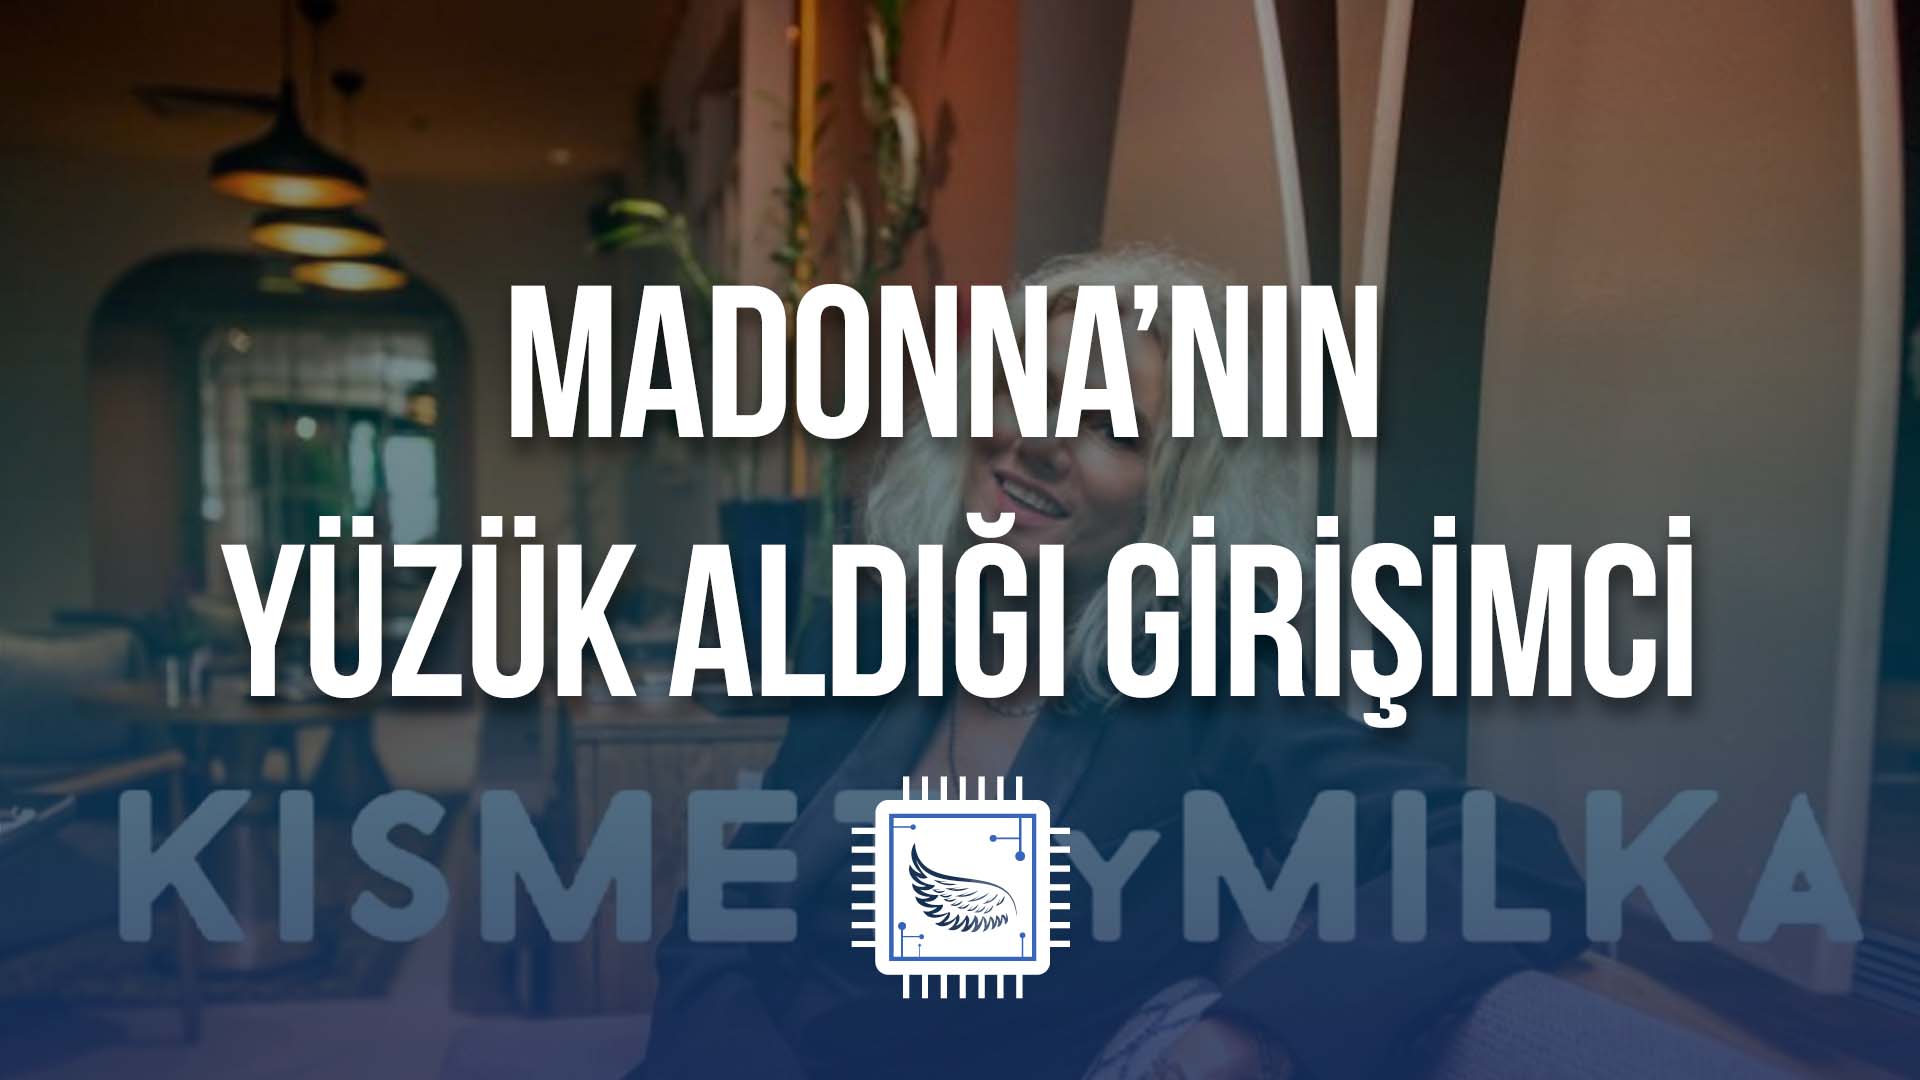 Madonna’nın Yüzük Aldığı Türk Girişimci Milka